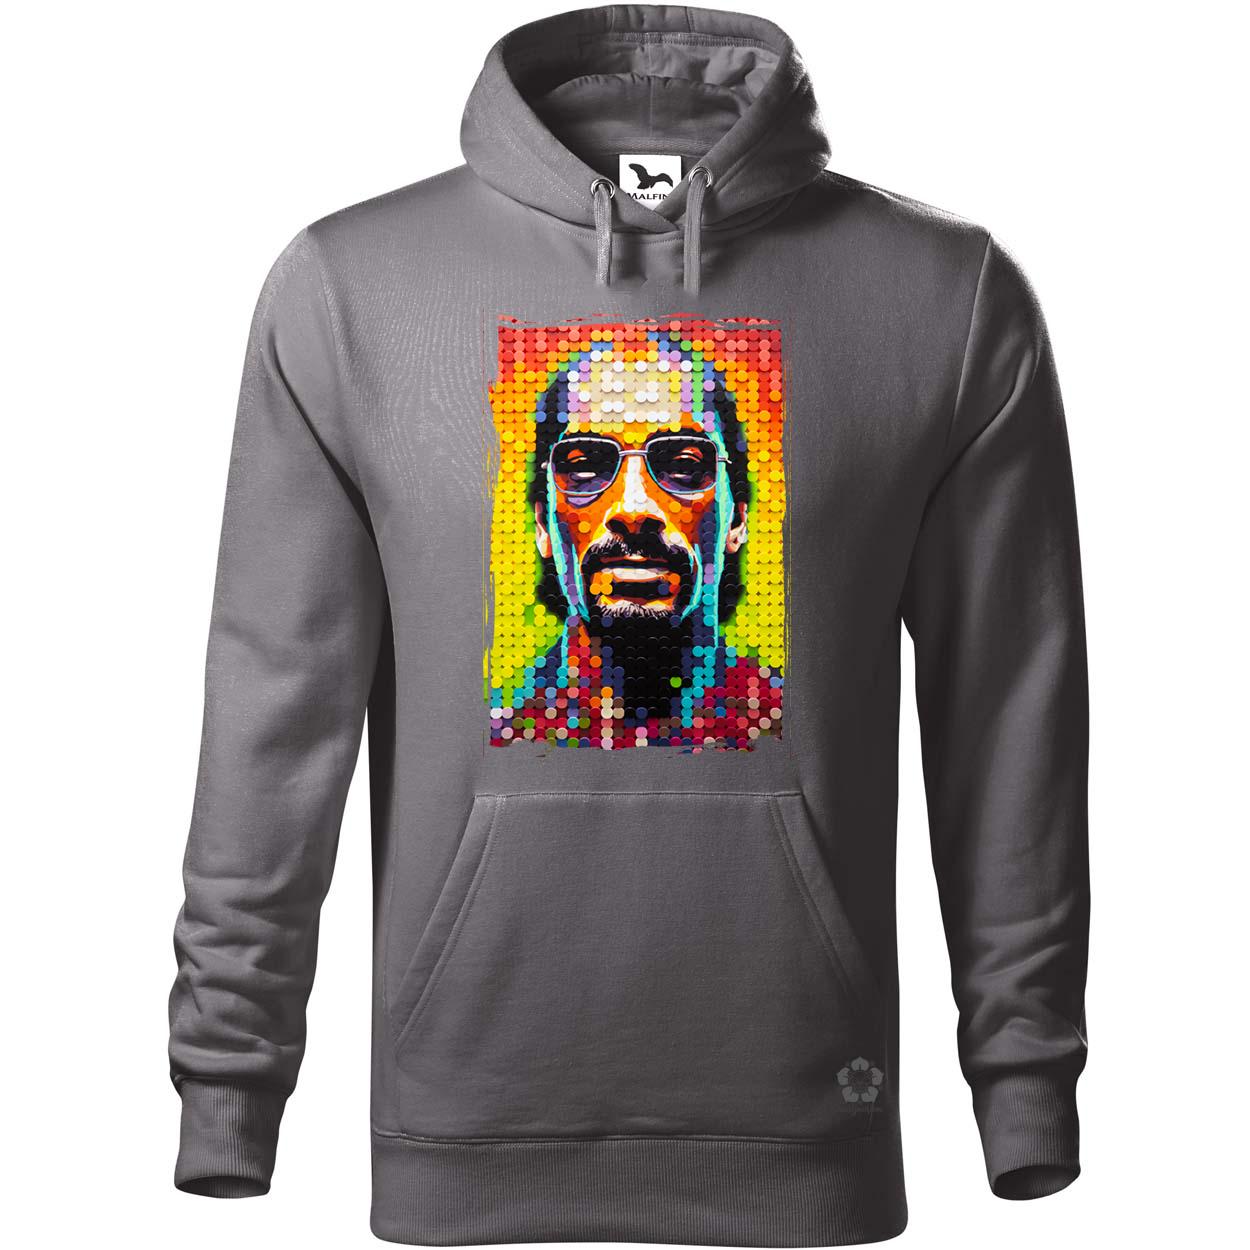 Snoop Dogg v3